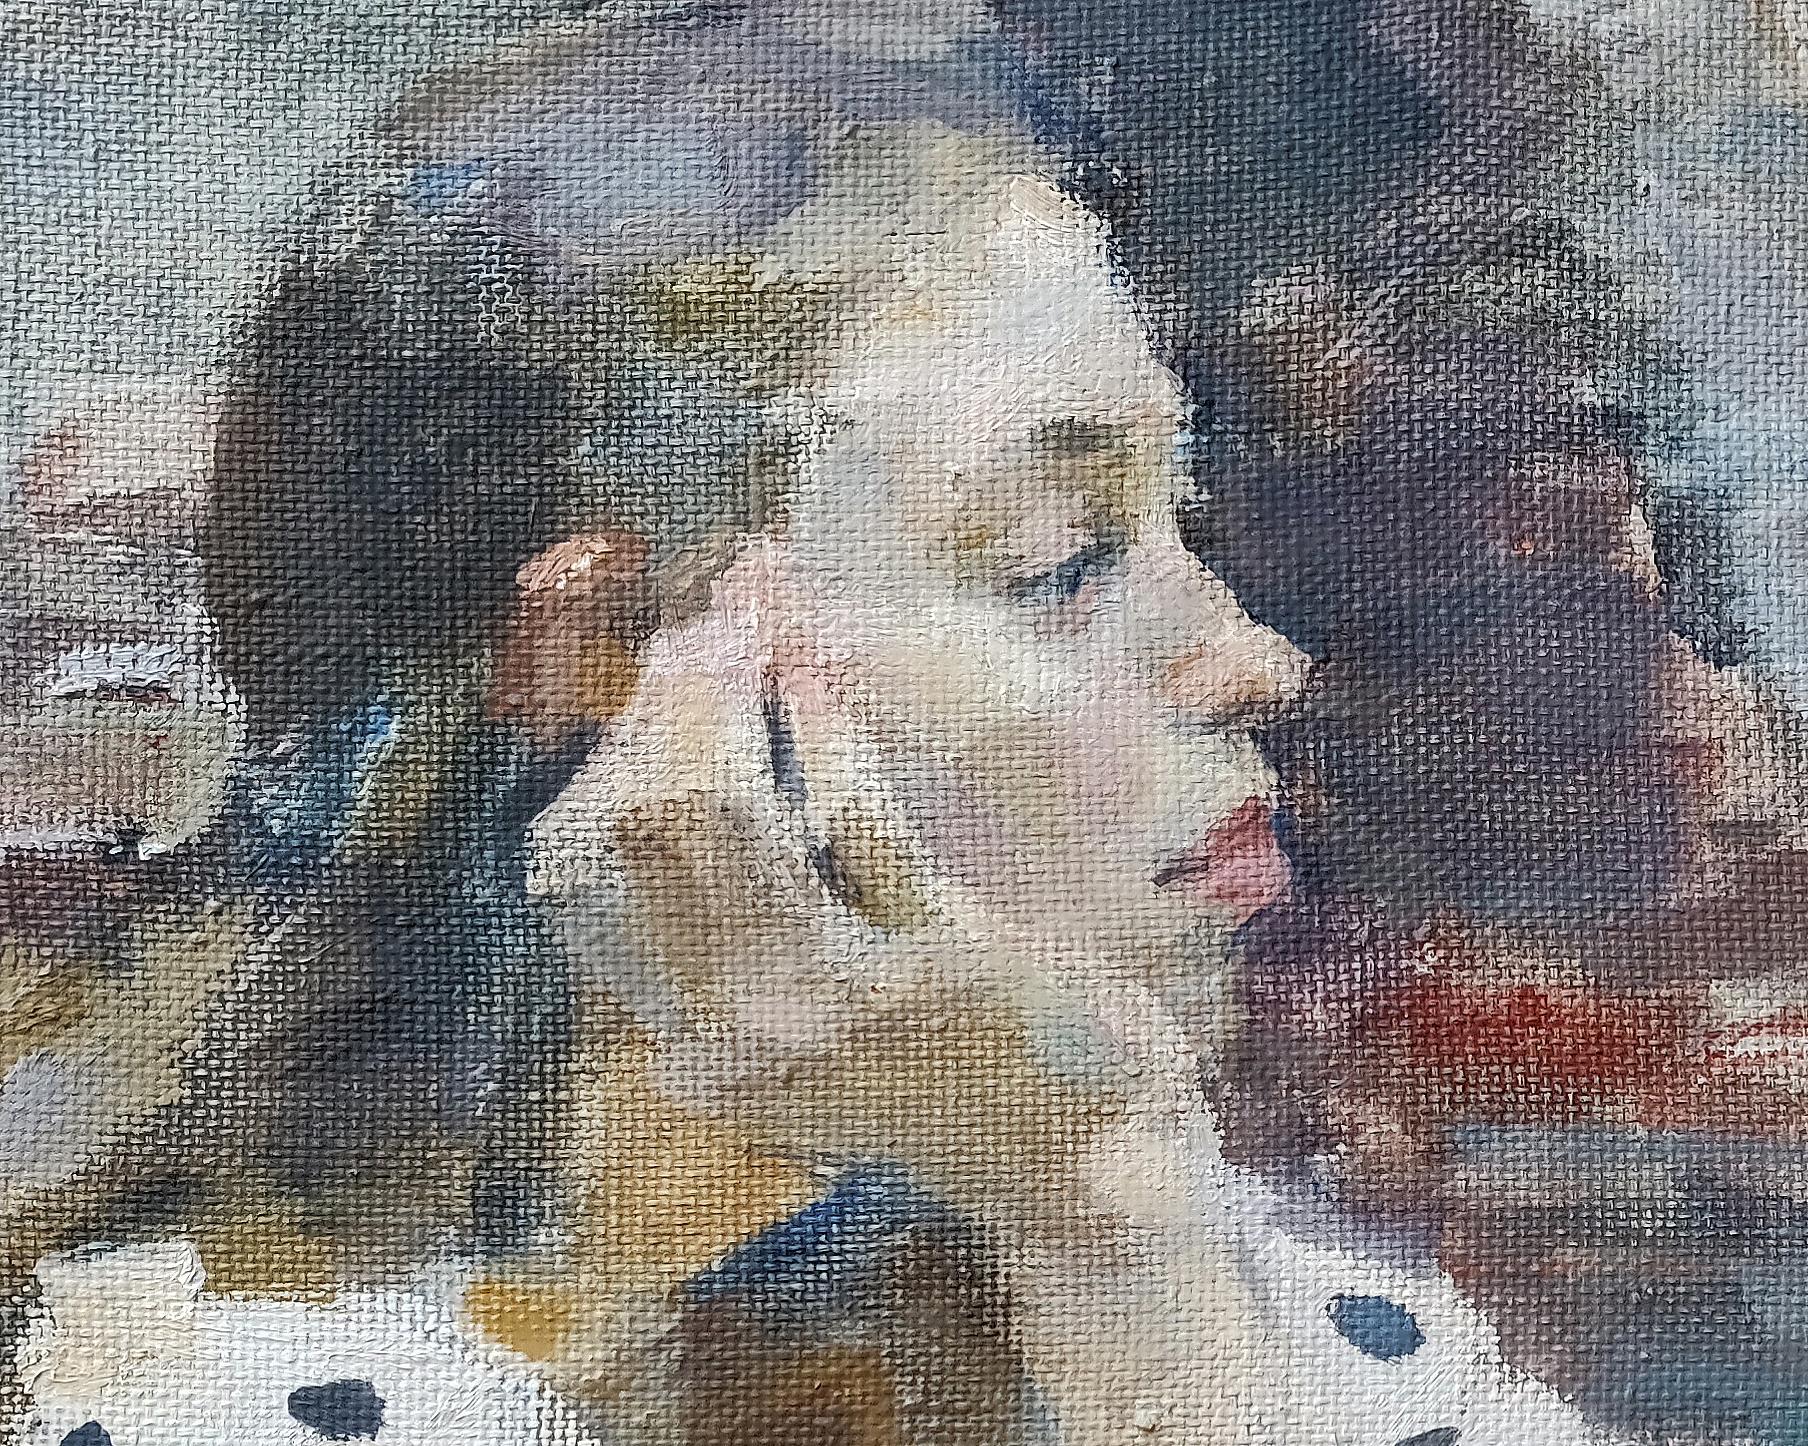 contemporary female portrait painters